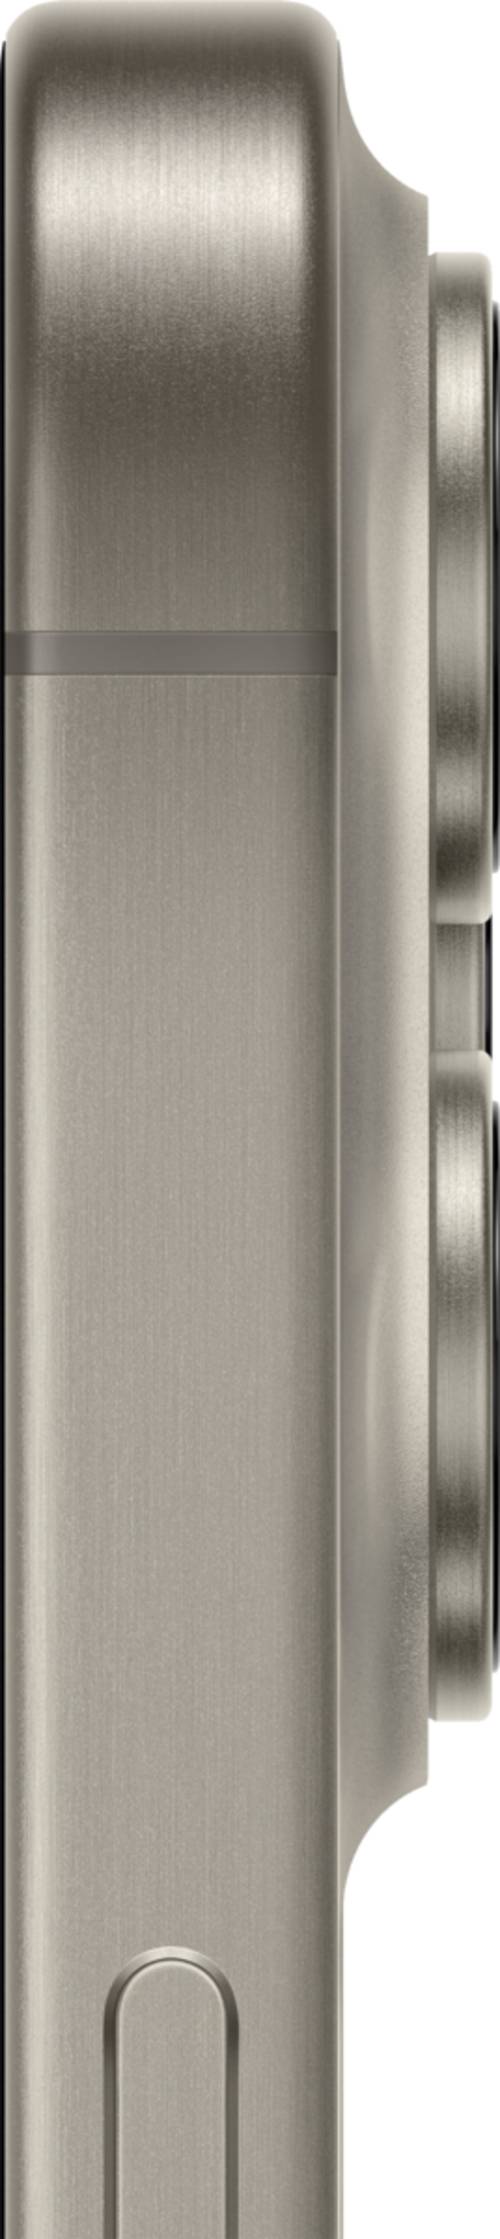 Apple iPhone 15 Pro Max 256GB Naturlig Titan